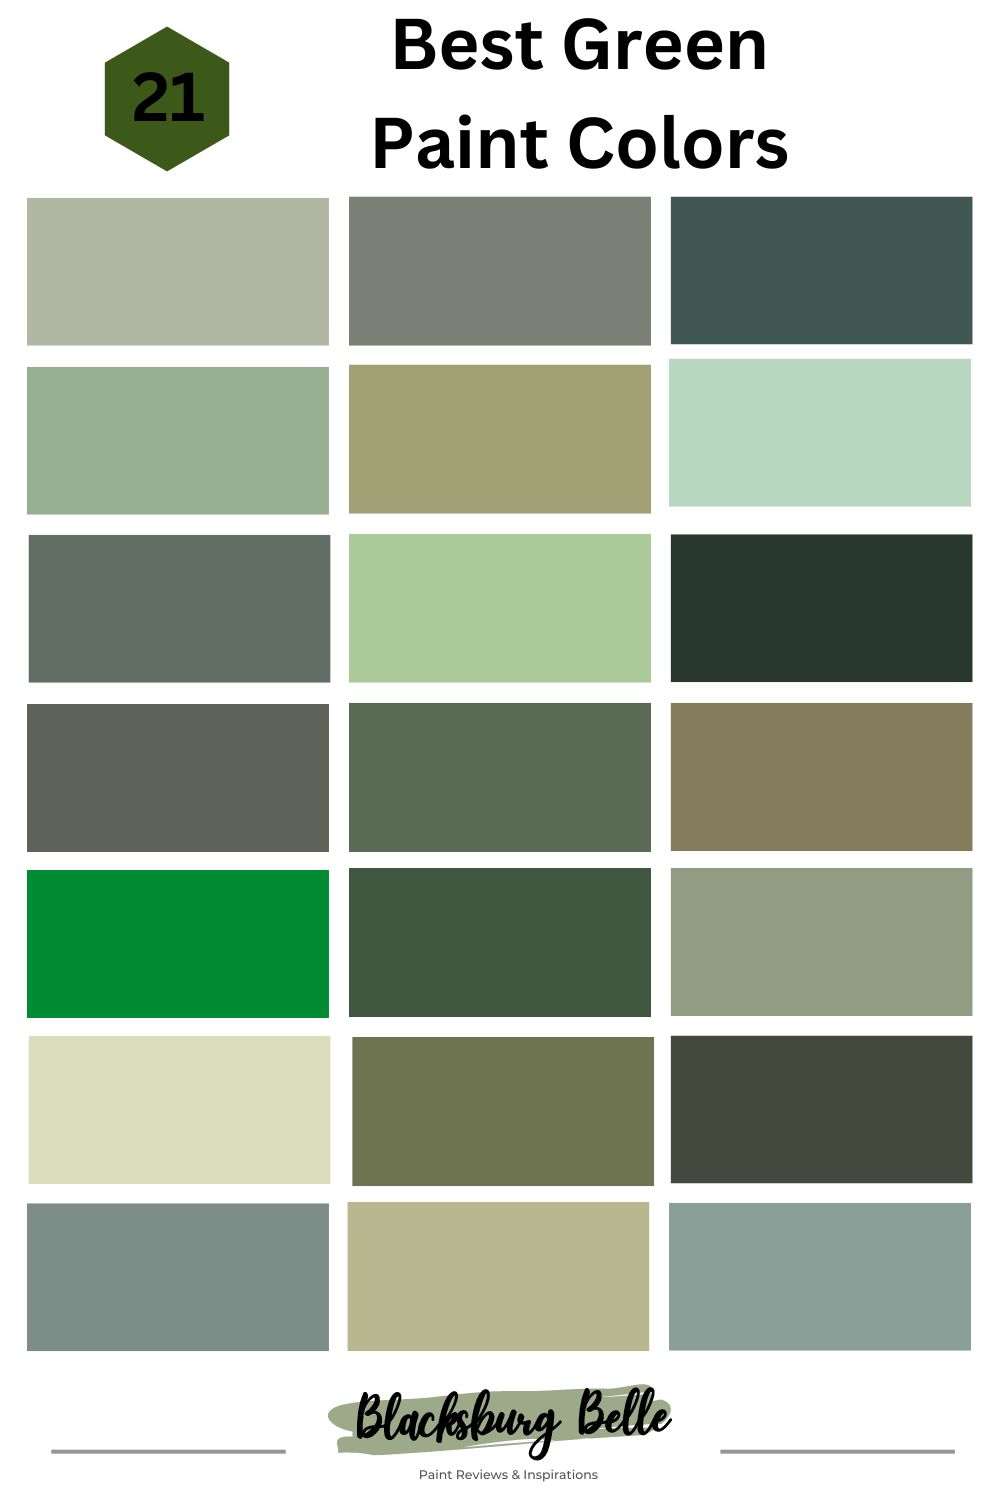 21 Best Green Paint Colors